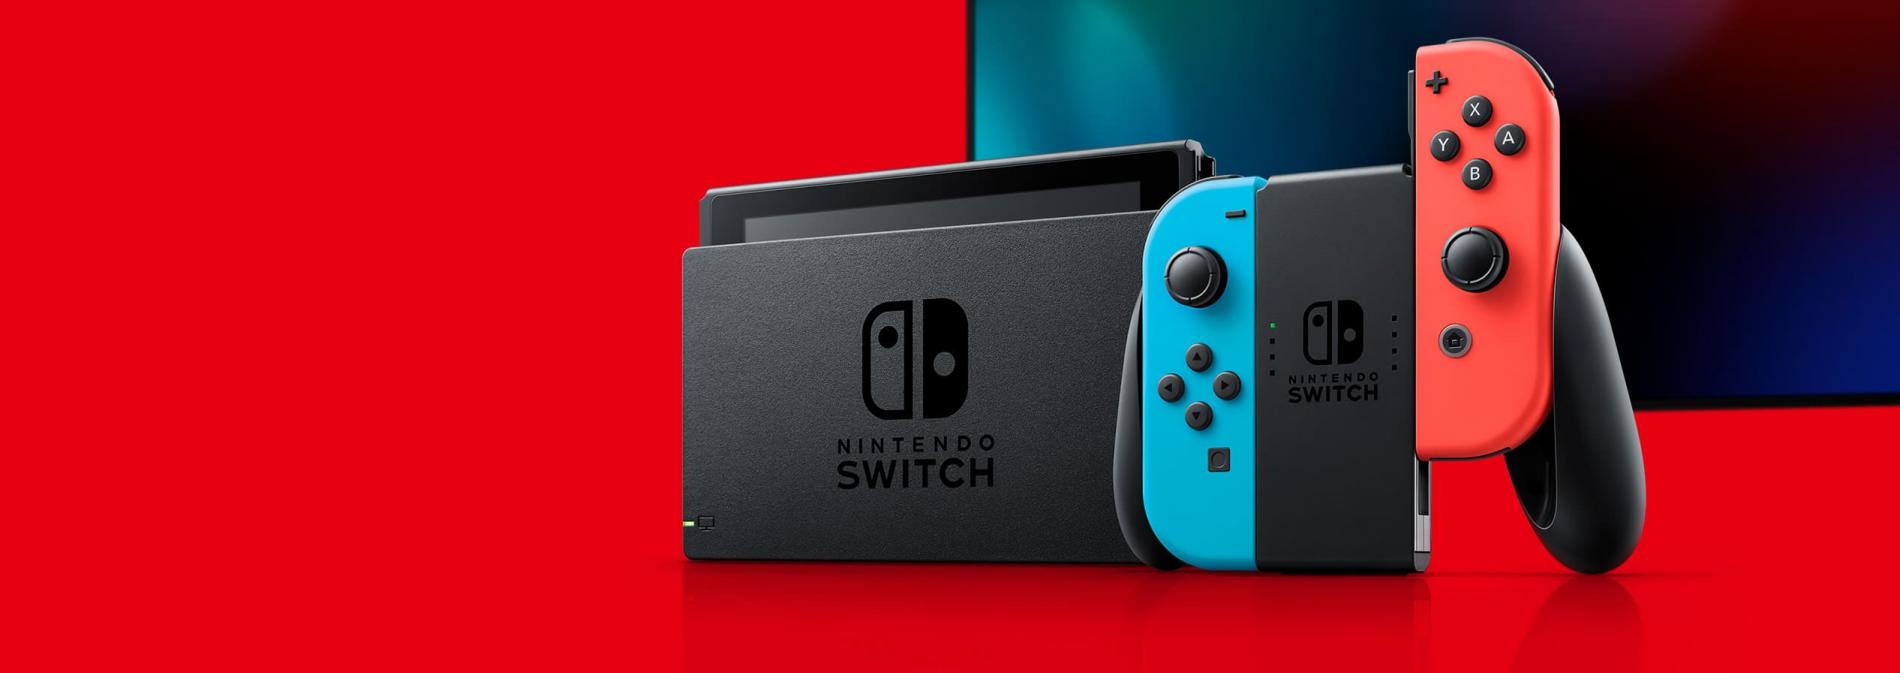 Konsol Nintendo Switch yang Sudah Tidak Dimainkan Harus Tetap Diisi Daya Baterainya, Minimal 6 Bulan Sekali